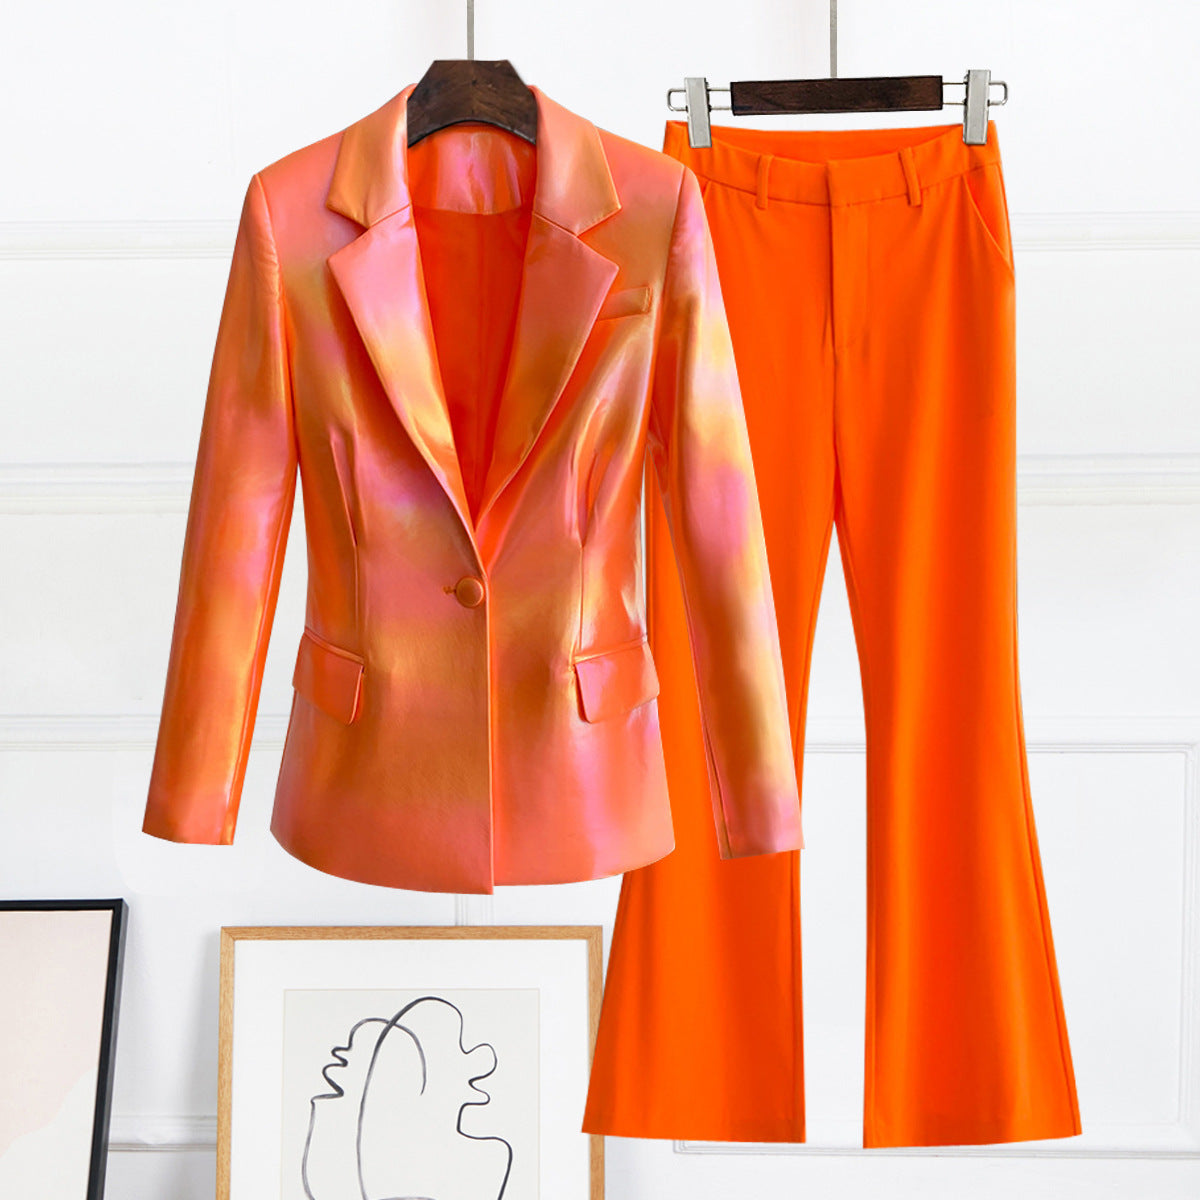 Candy Tangerine Metallic Blazer Suit - Hot fashionista